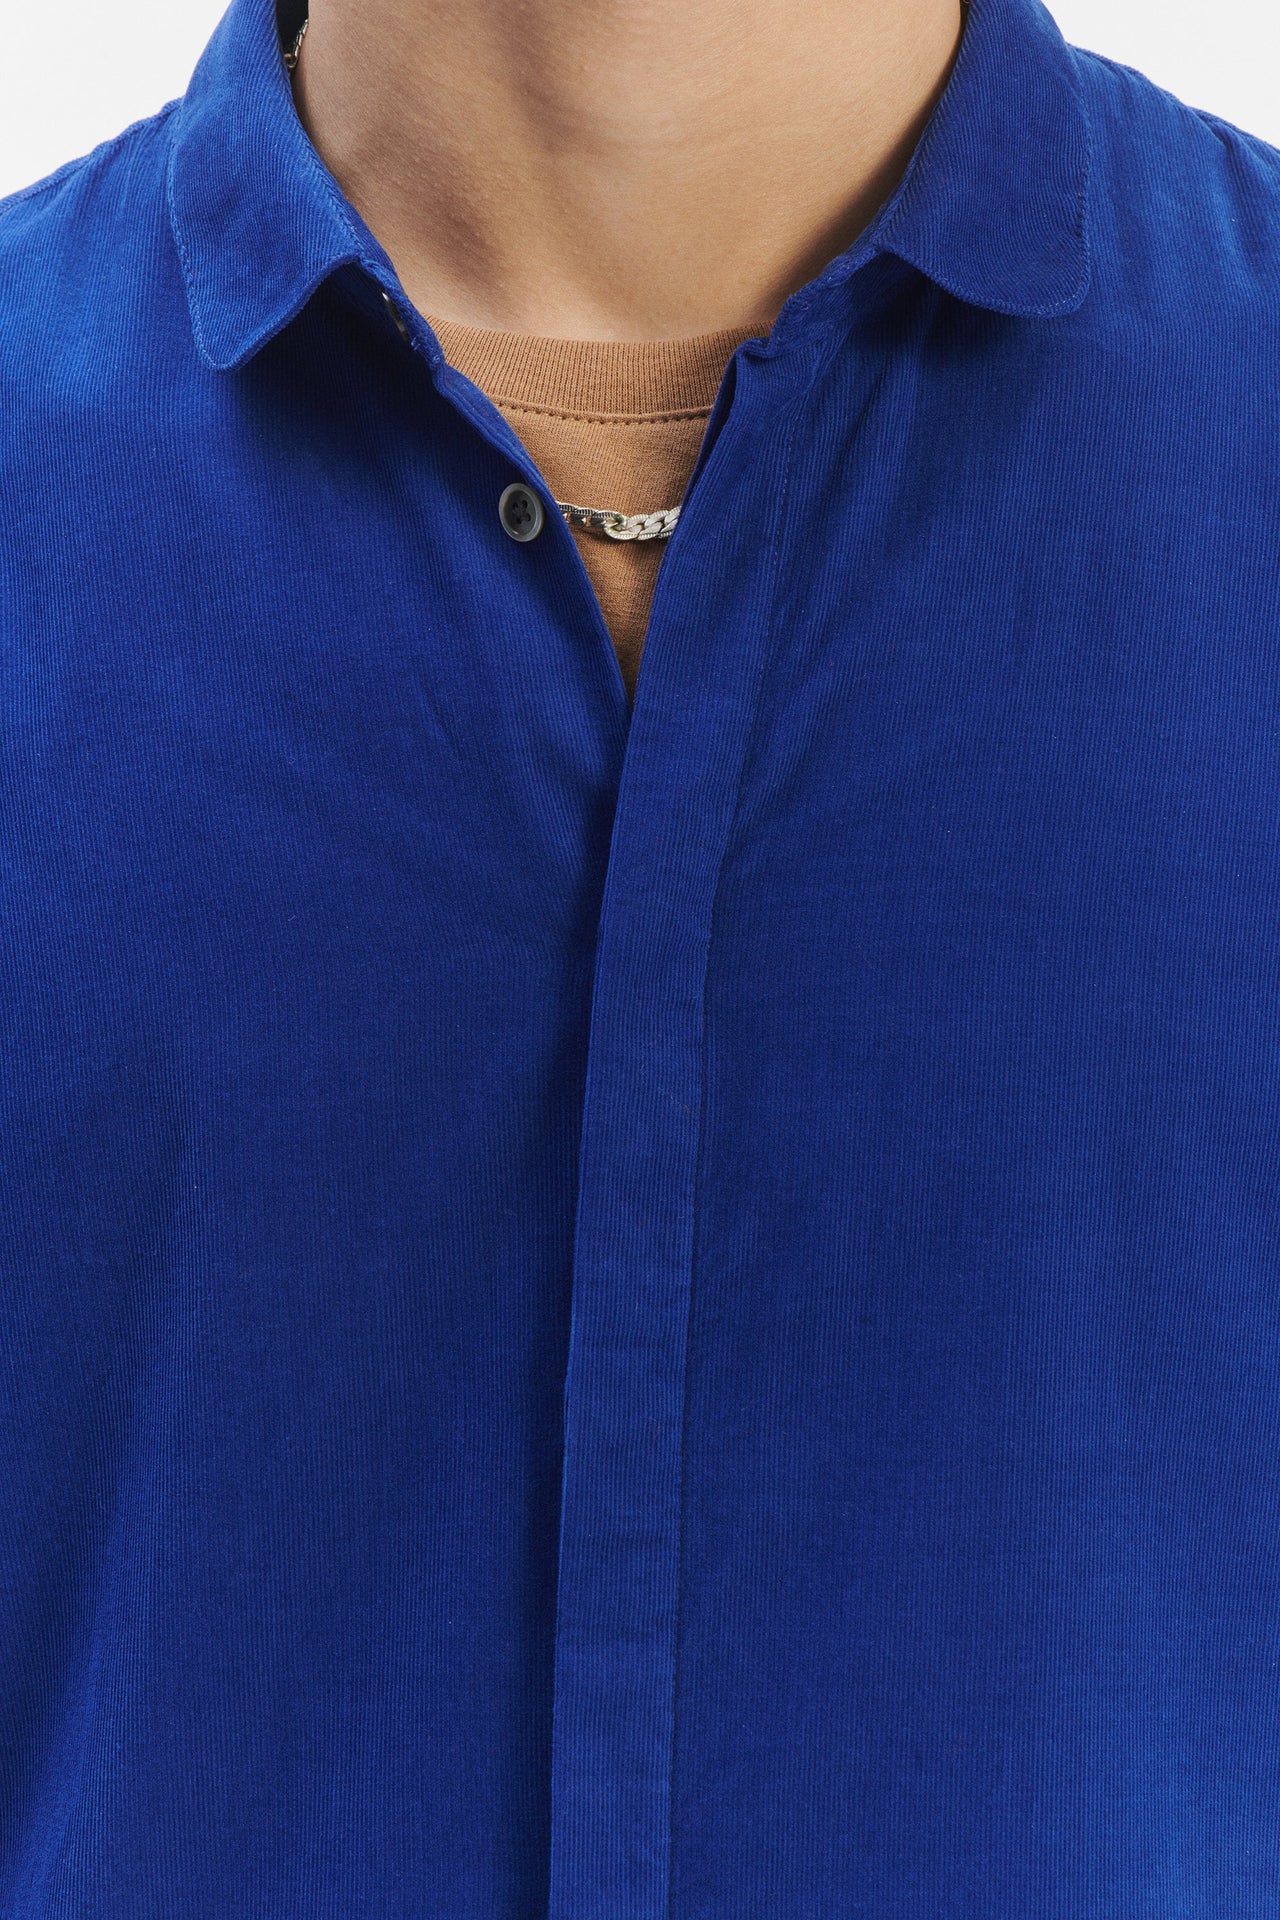 Cute Shirt  in a Prussian Blue Italian Baby Corduroy Cotton